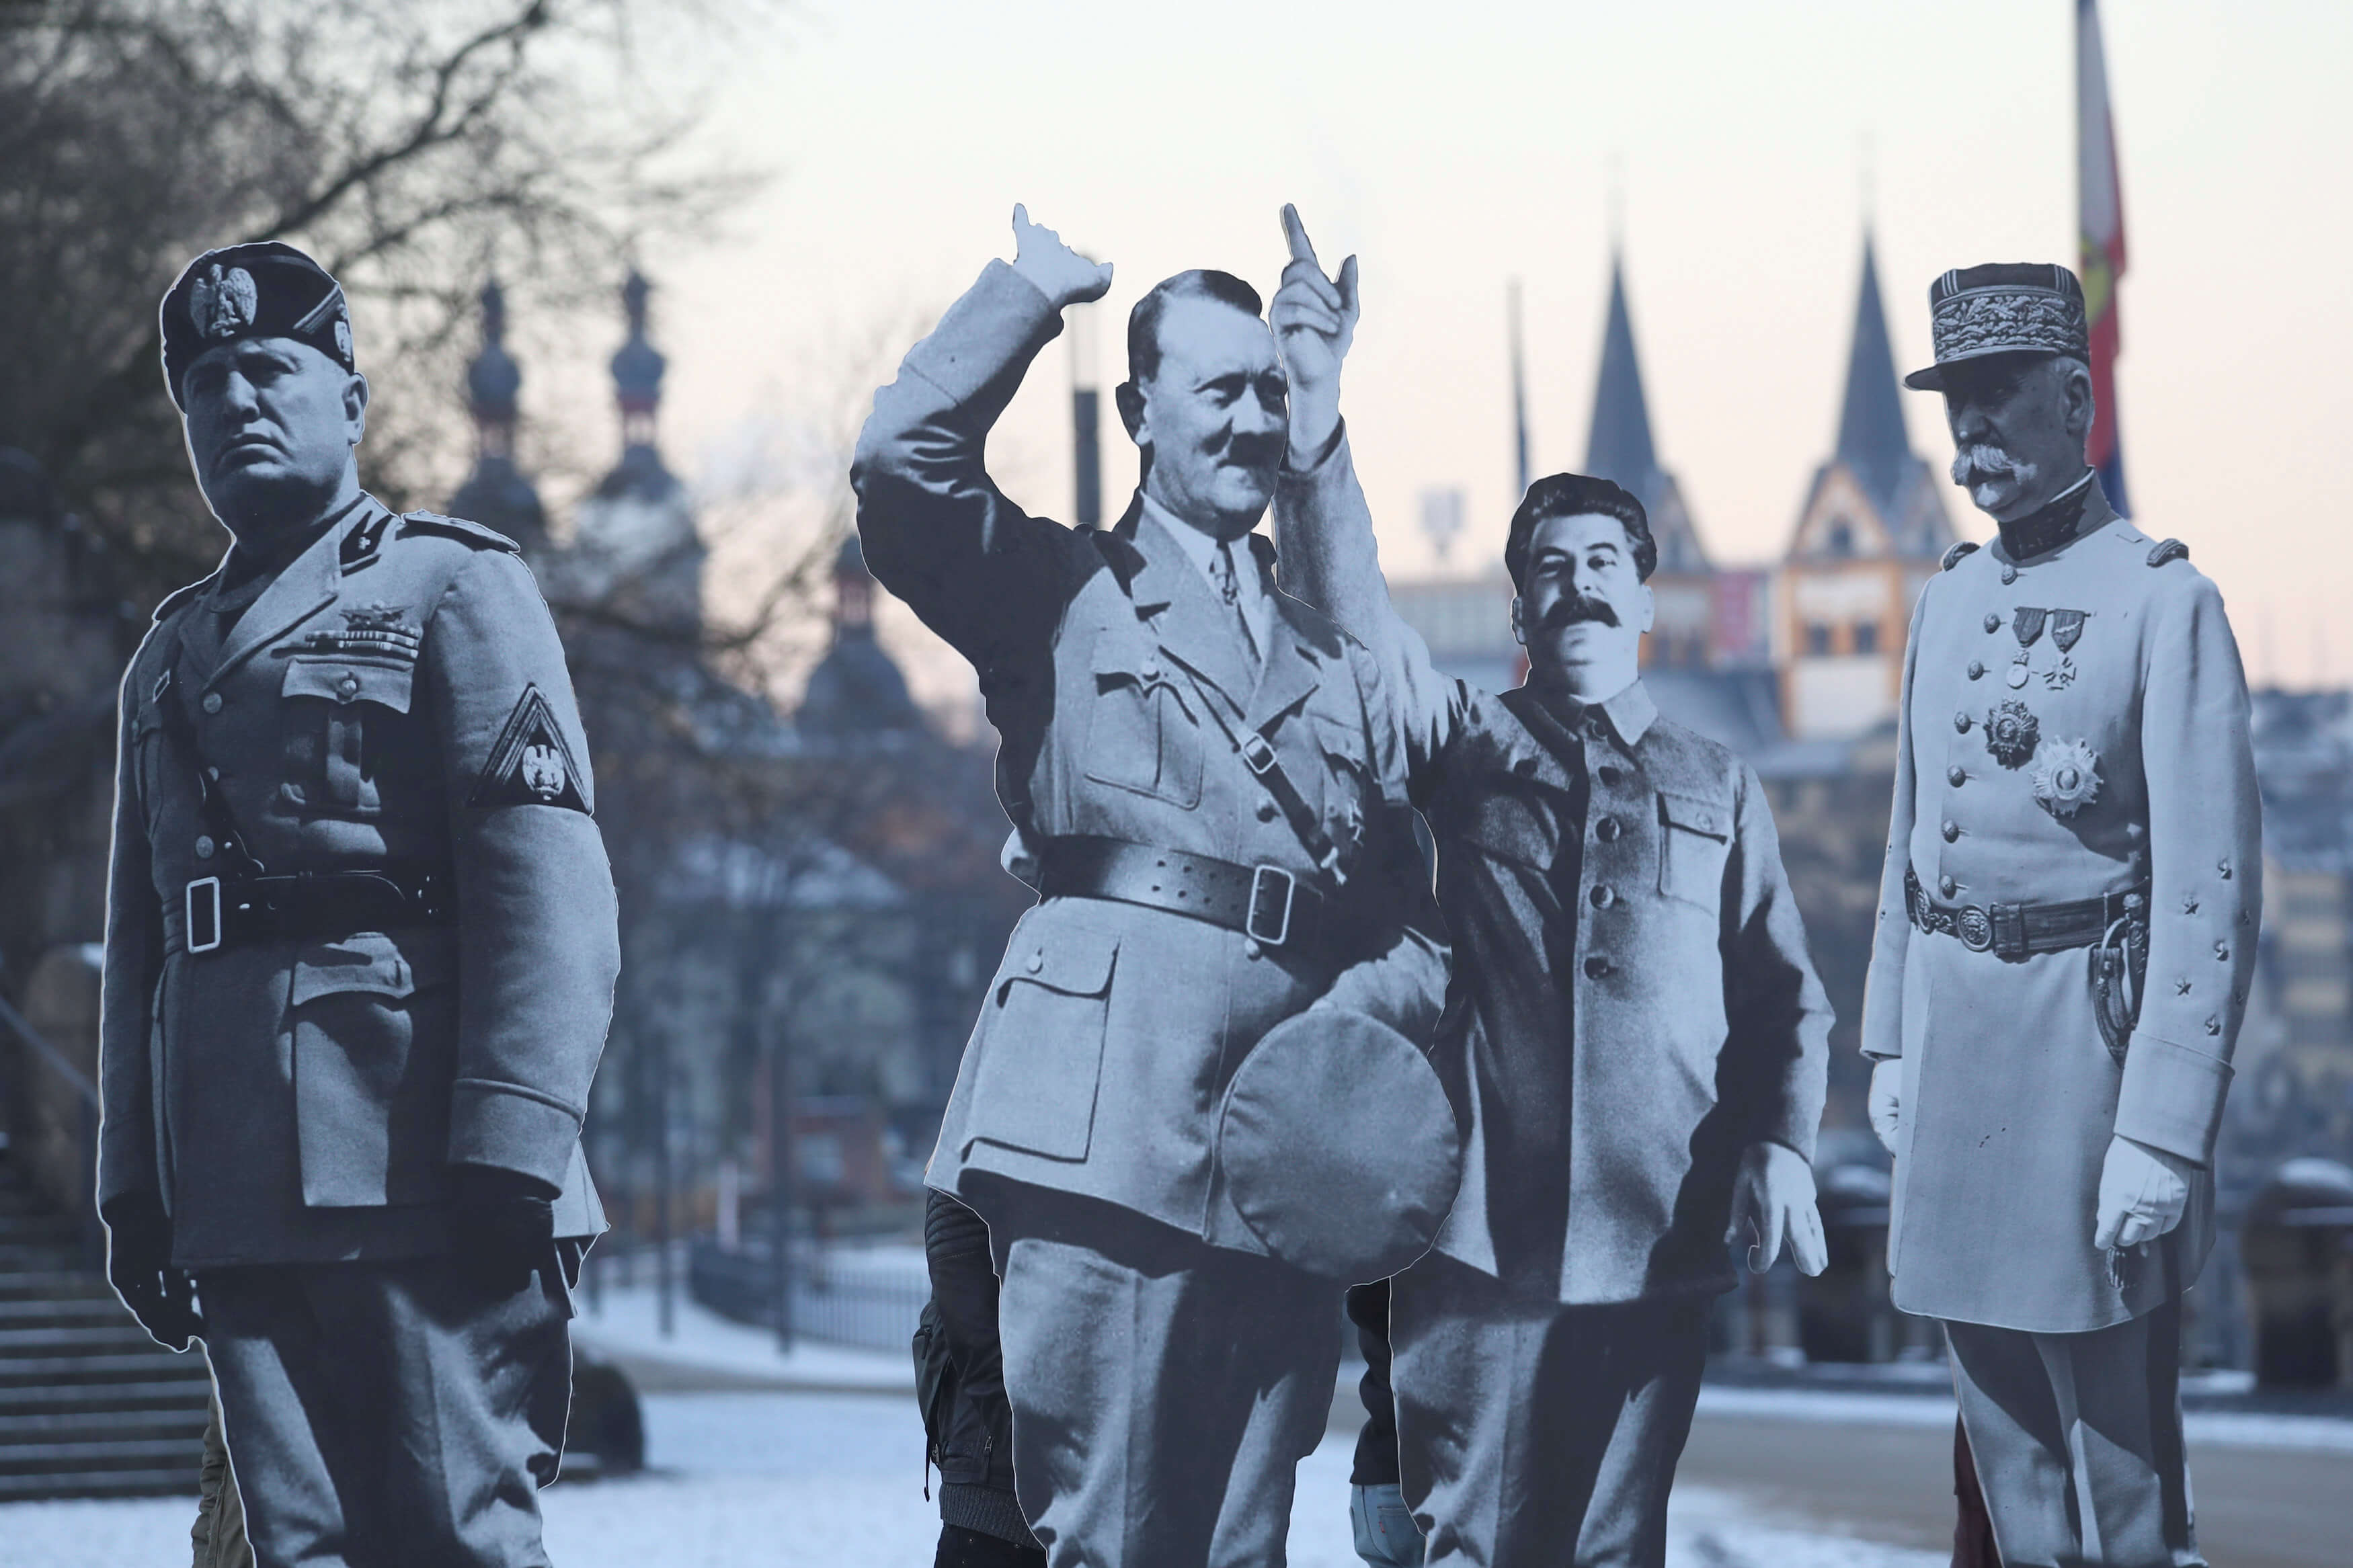 Austrian authorities seeking Hitler double seen around birthplace